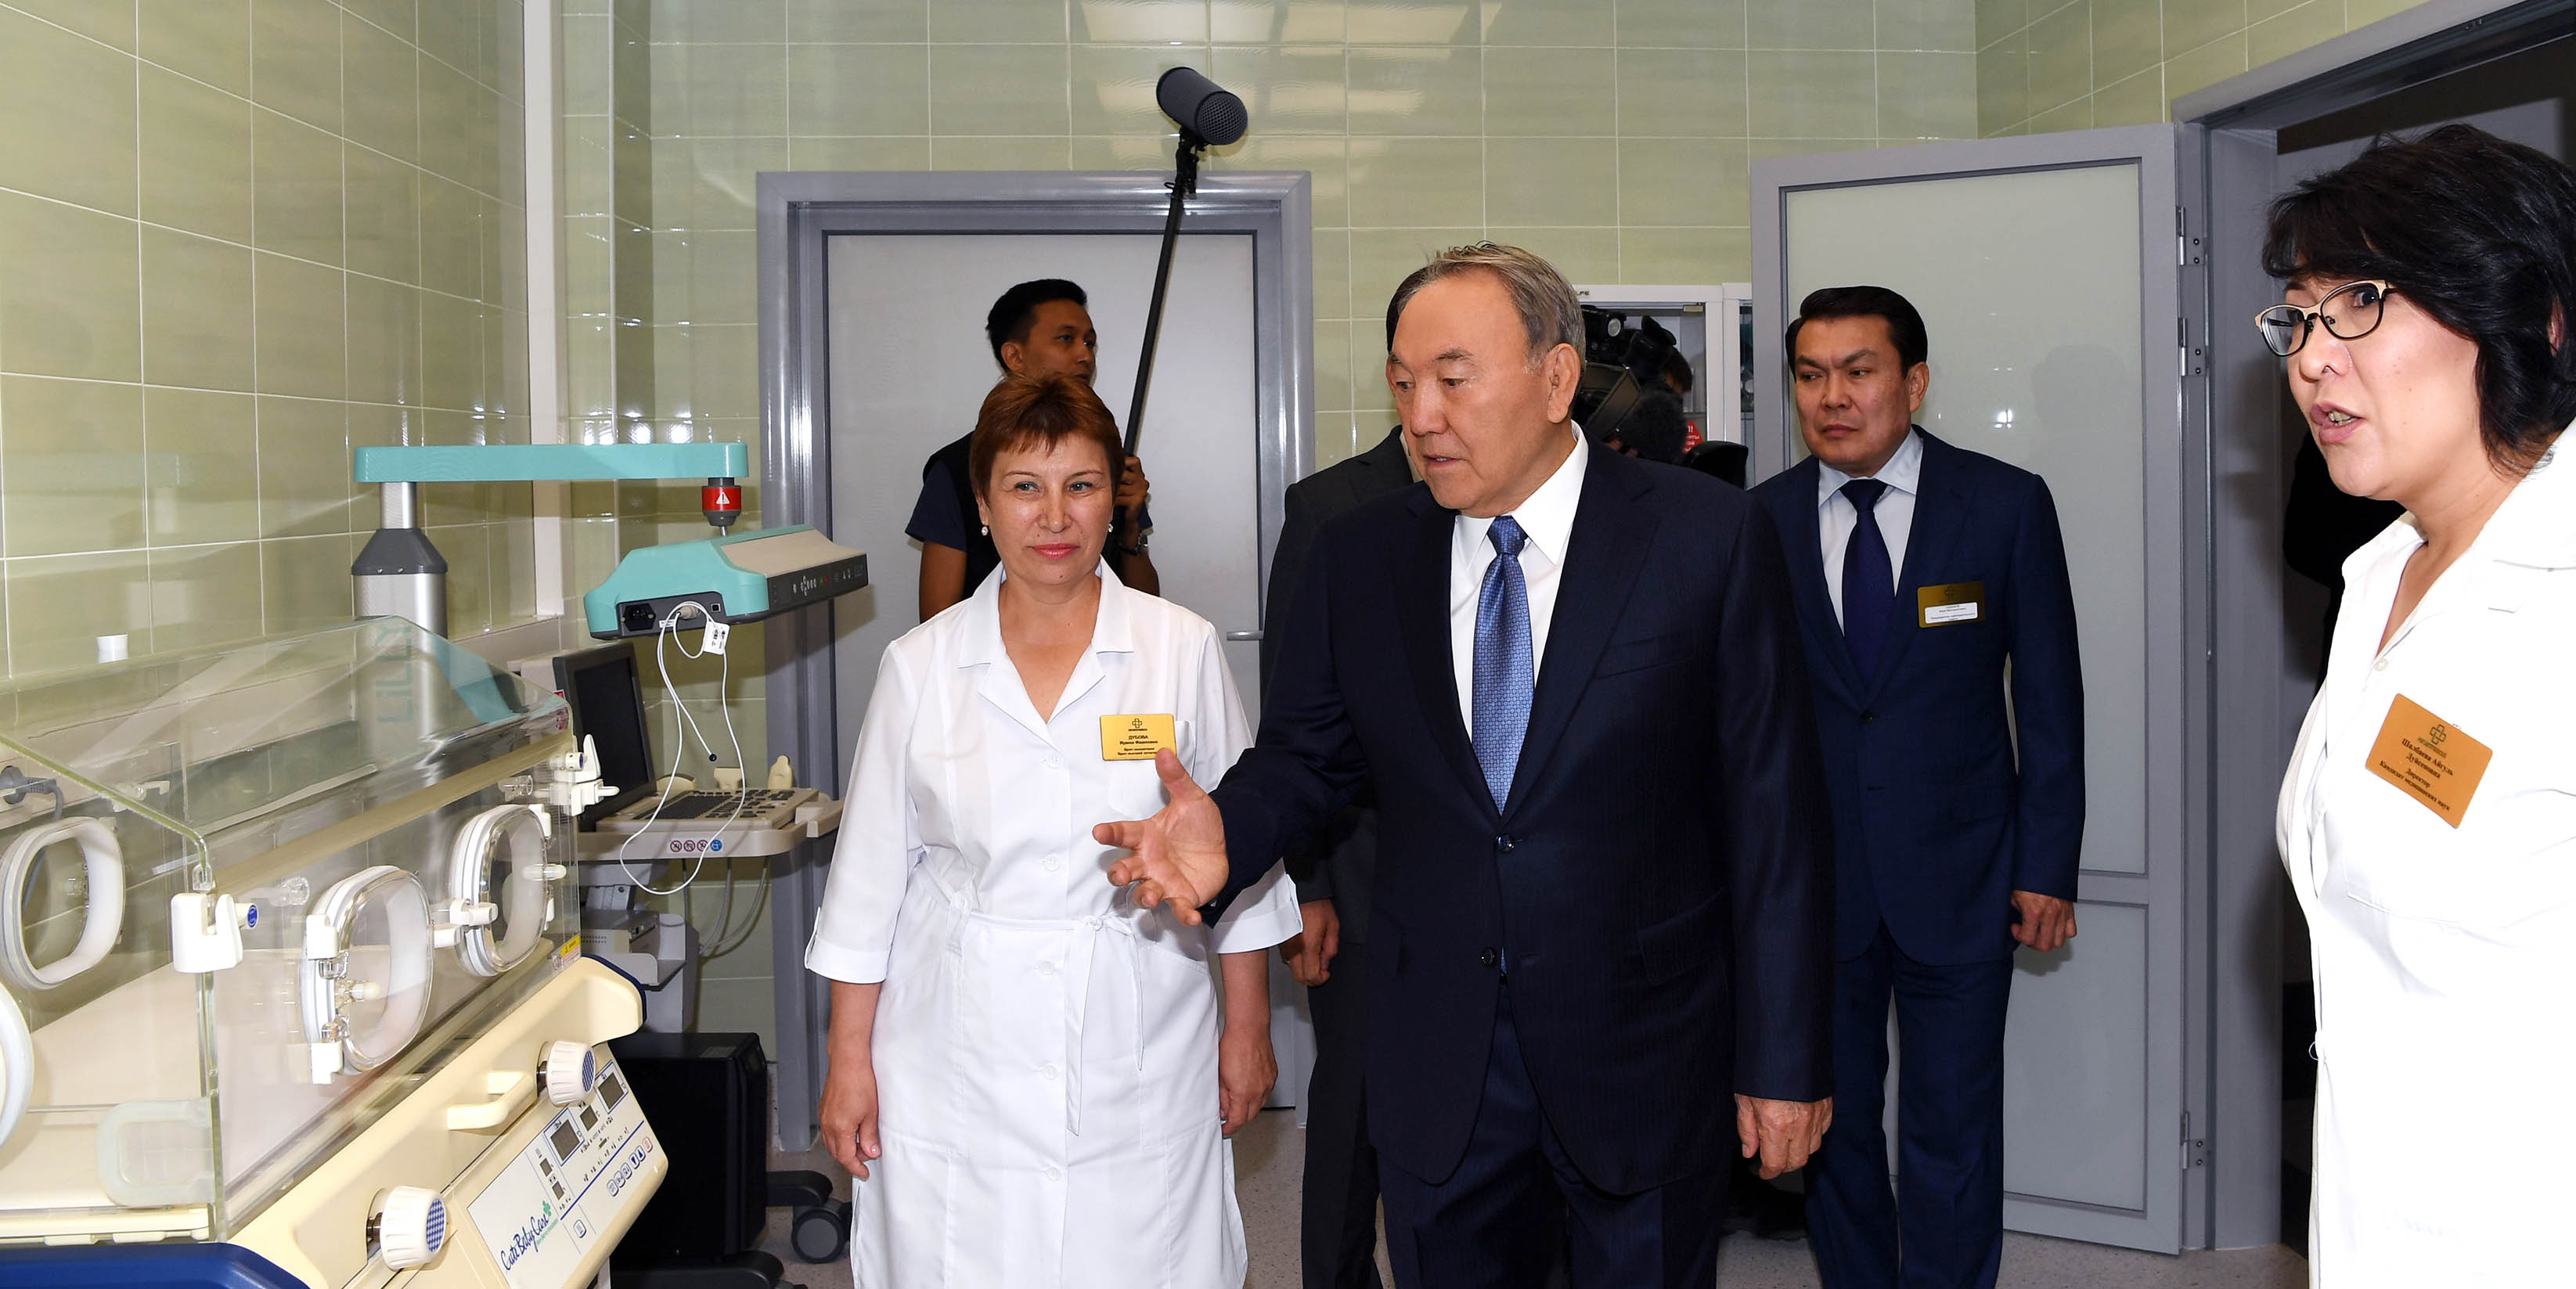 Нурсултан Назарбаев: Врач должен любить пациента, передавать ему свою энергетику